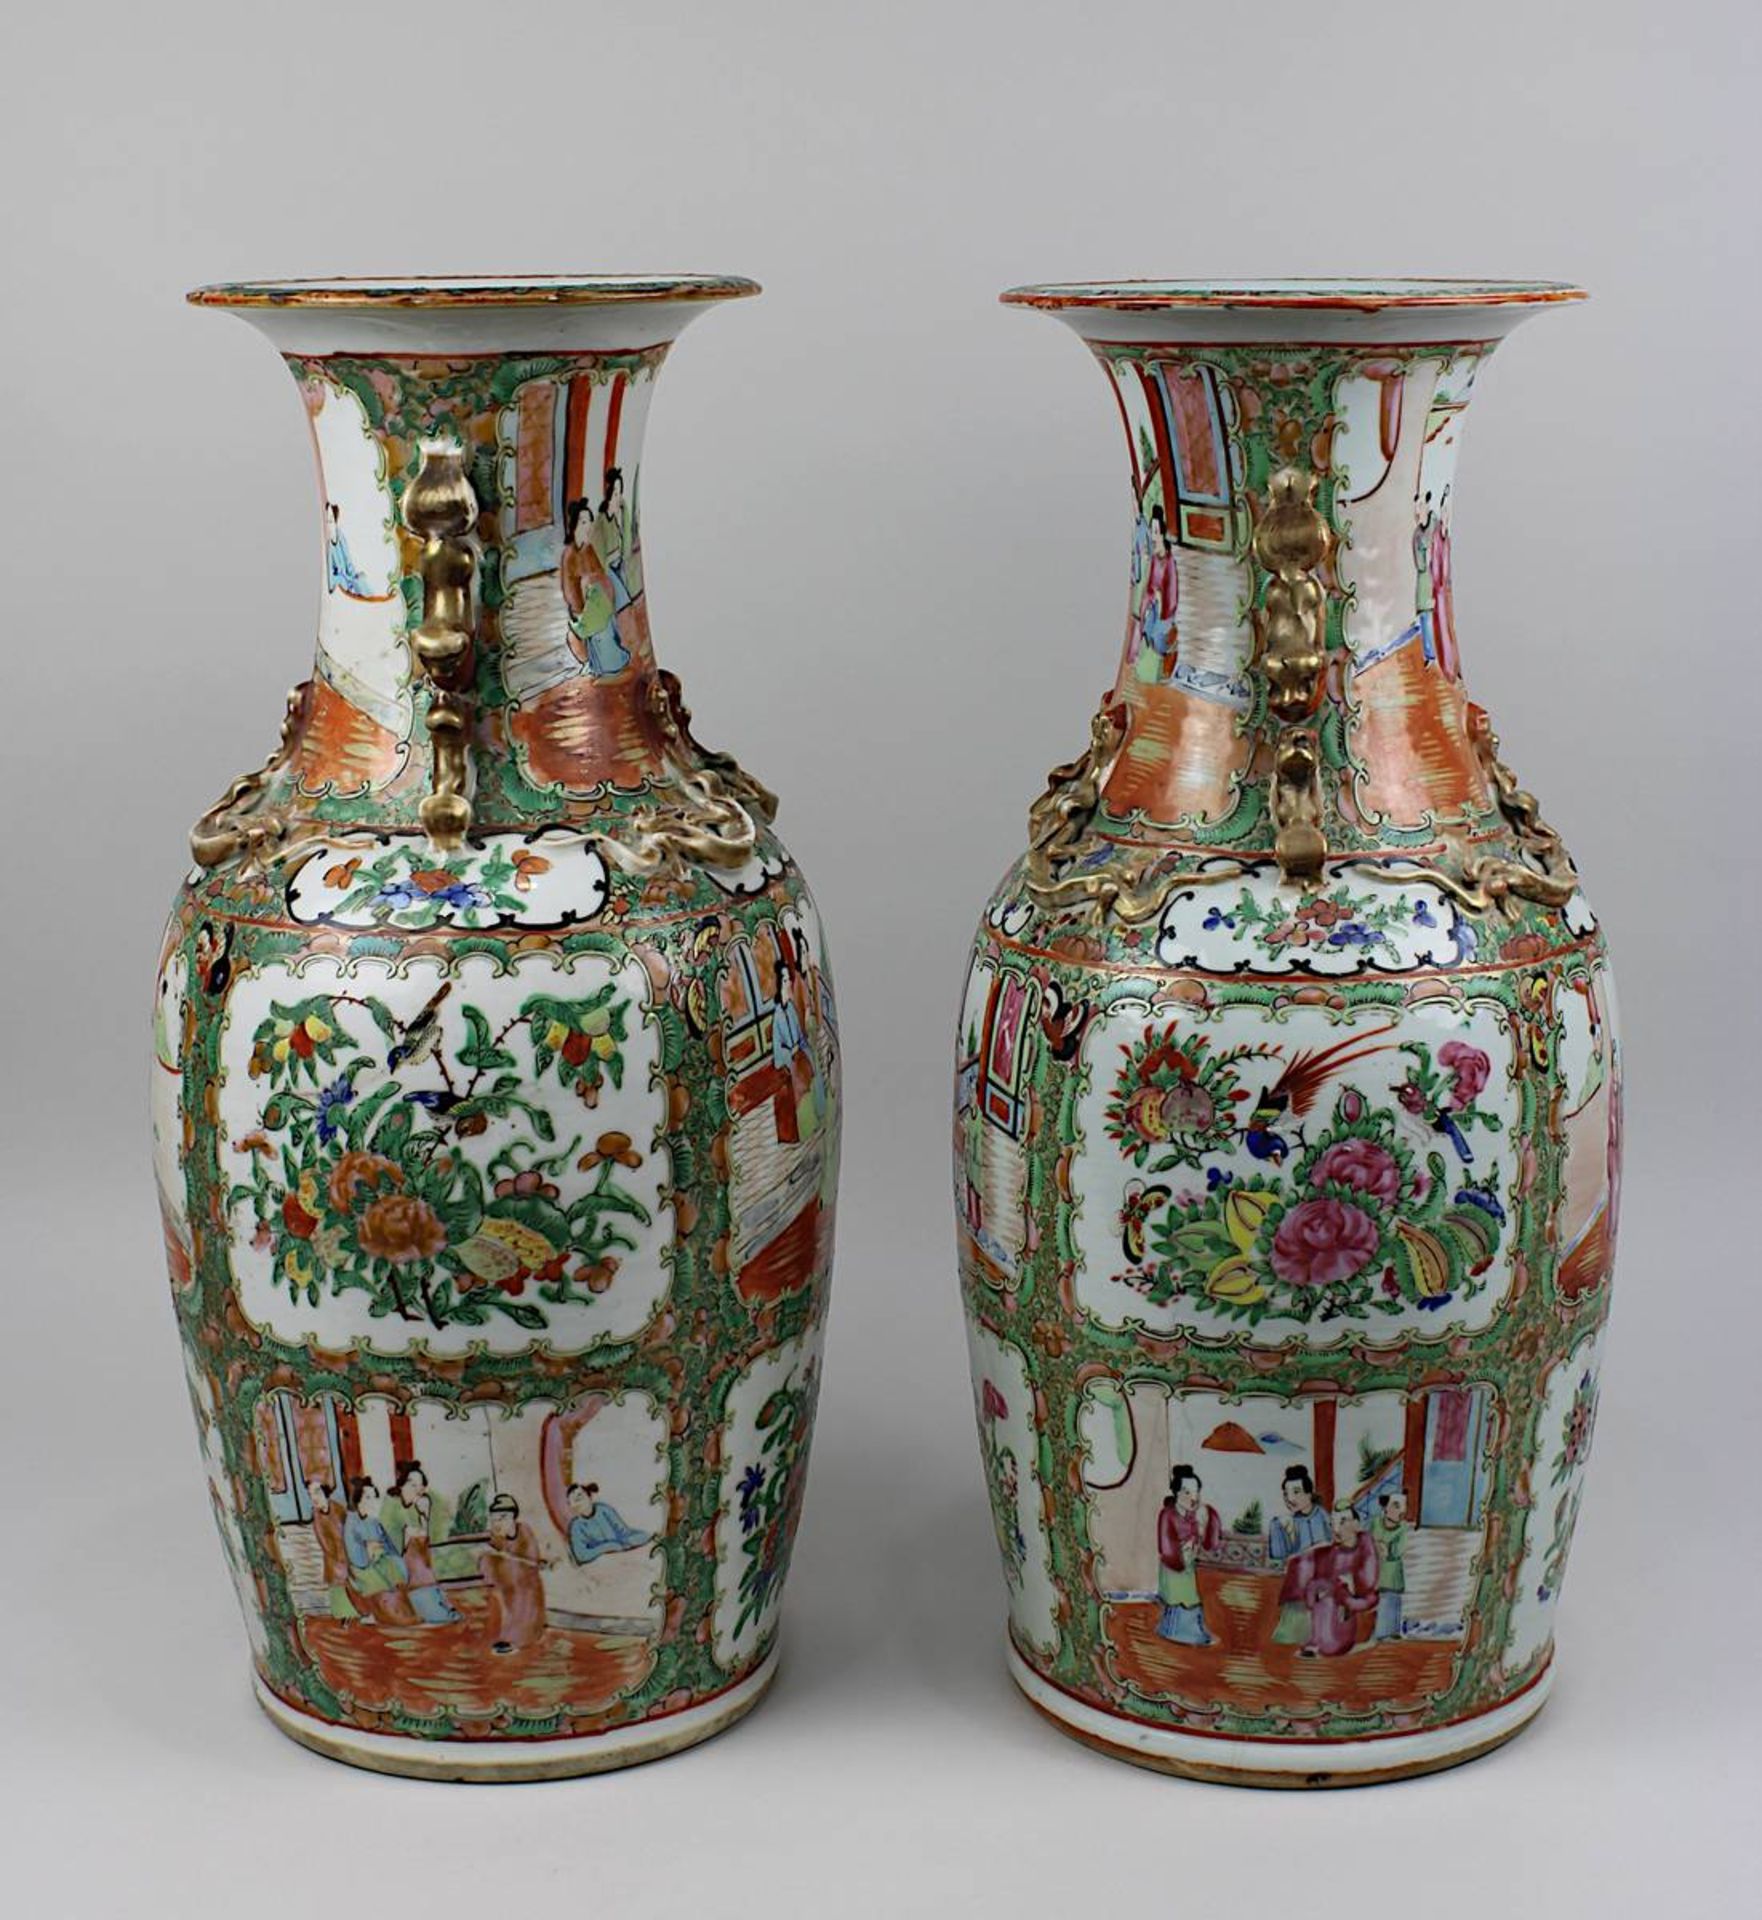 Paar Vasen famille rose, China 19. Jh., Porzellan weißer Scherben, leicht seladonfarben glasiert, - Bild 2 aus 6